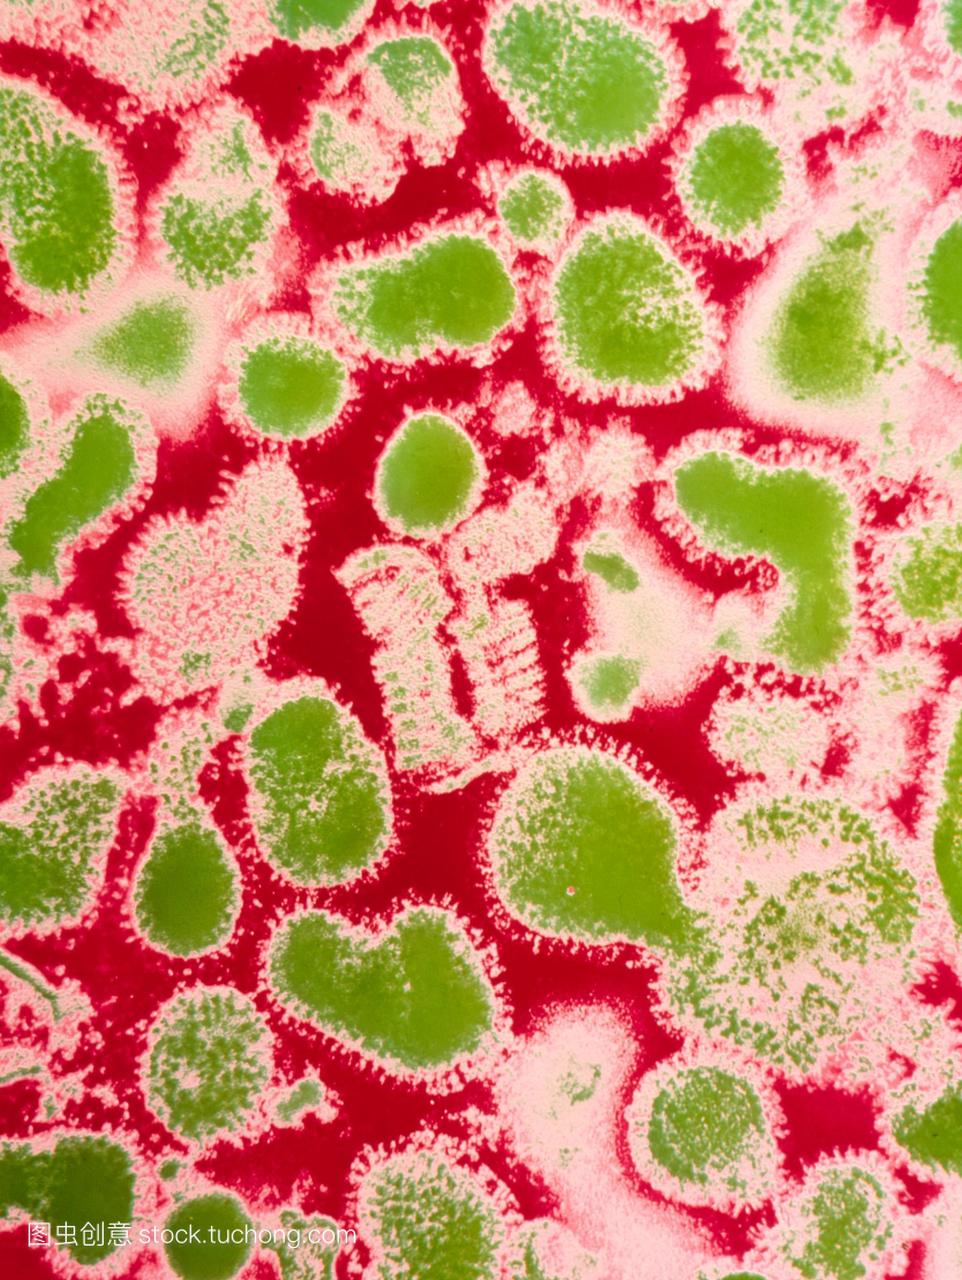 亚洲流感病毒的透射电子显微照片的亚洲流感猪